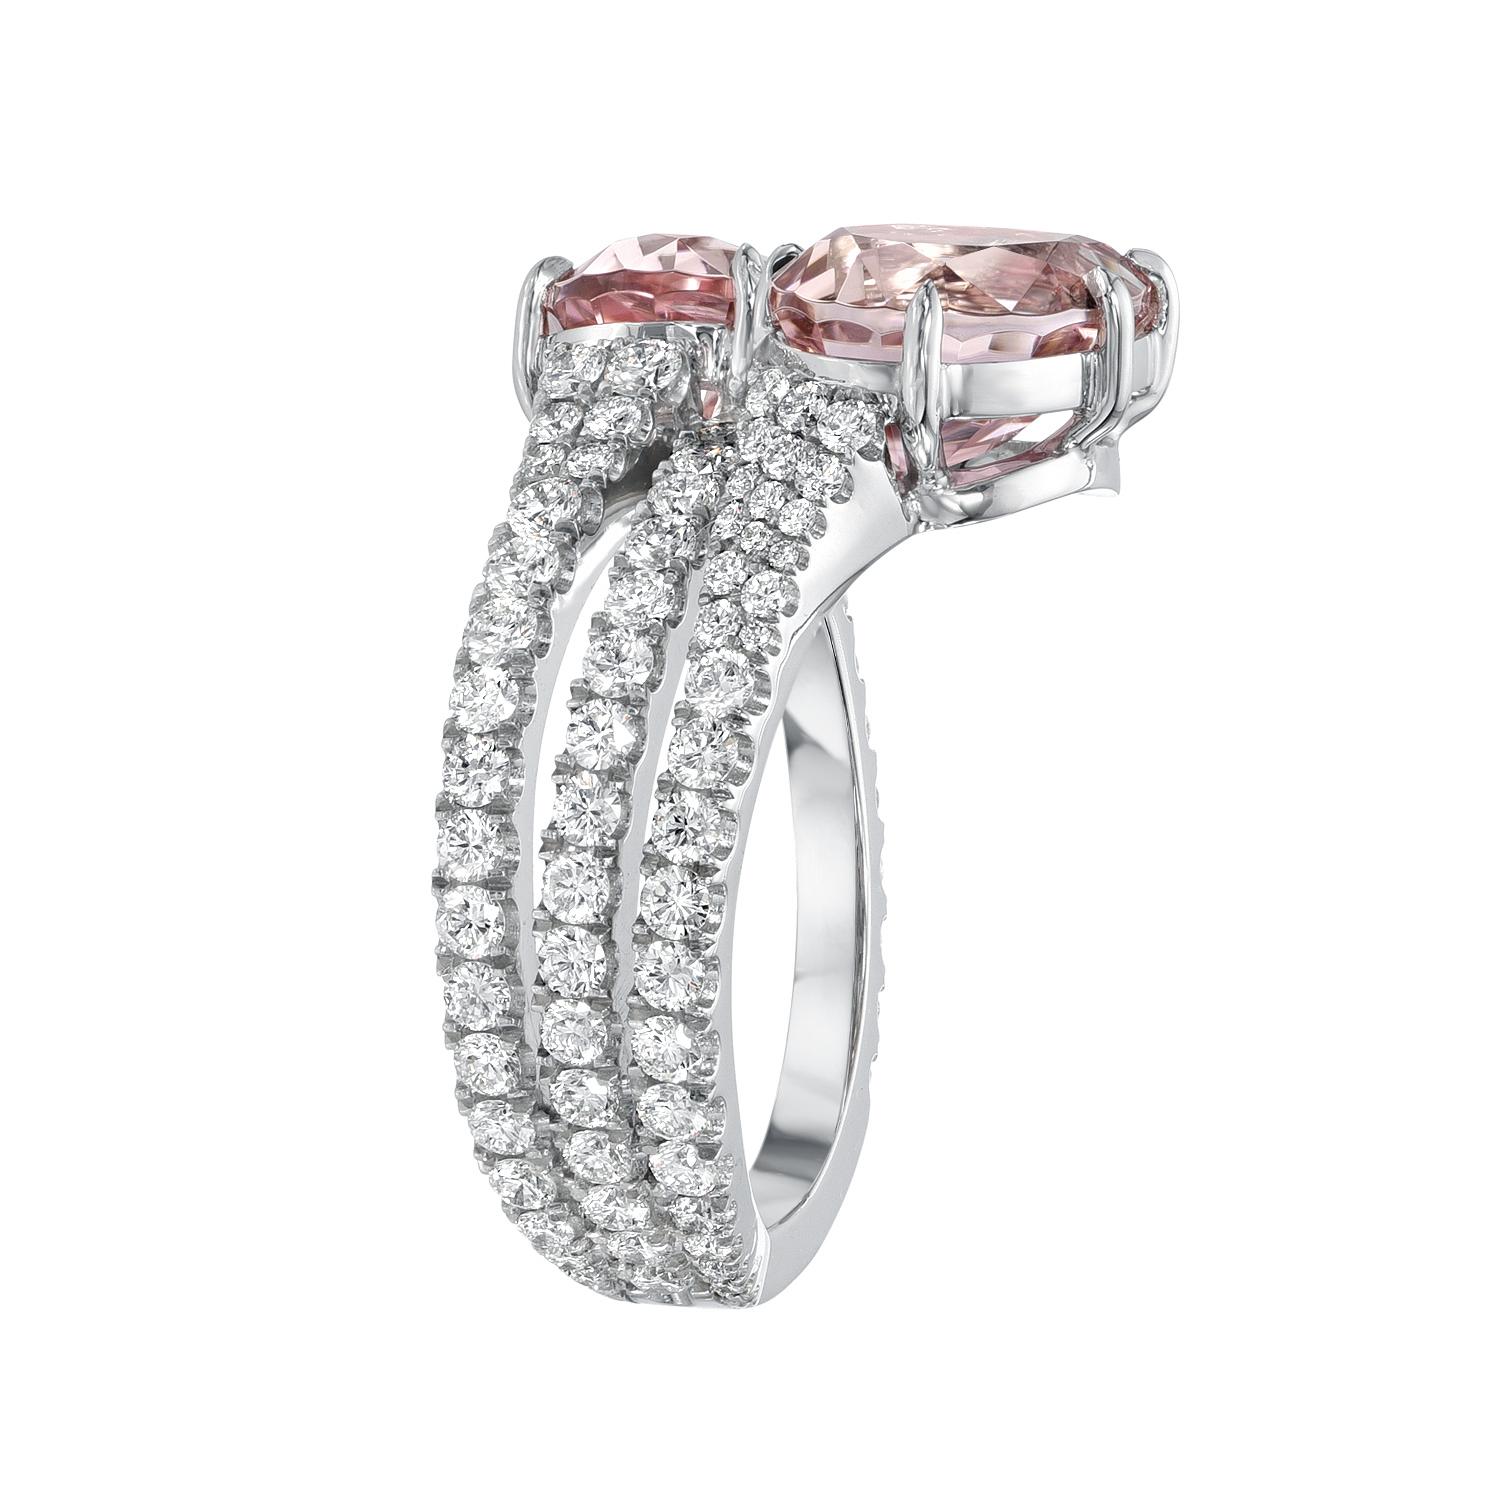 Magnifique paire de Tourmaline rose de 3,93 carats en forme de poire, sertie d'un impressionnant diamant de collection rond et brillant de 1 carat, bague en platine. 
Bague taille 6. Le redimensionnement est complémentaire sur demande.
Fabriqué par